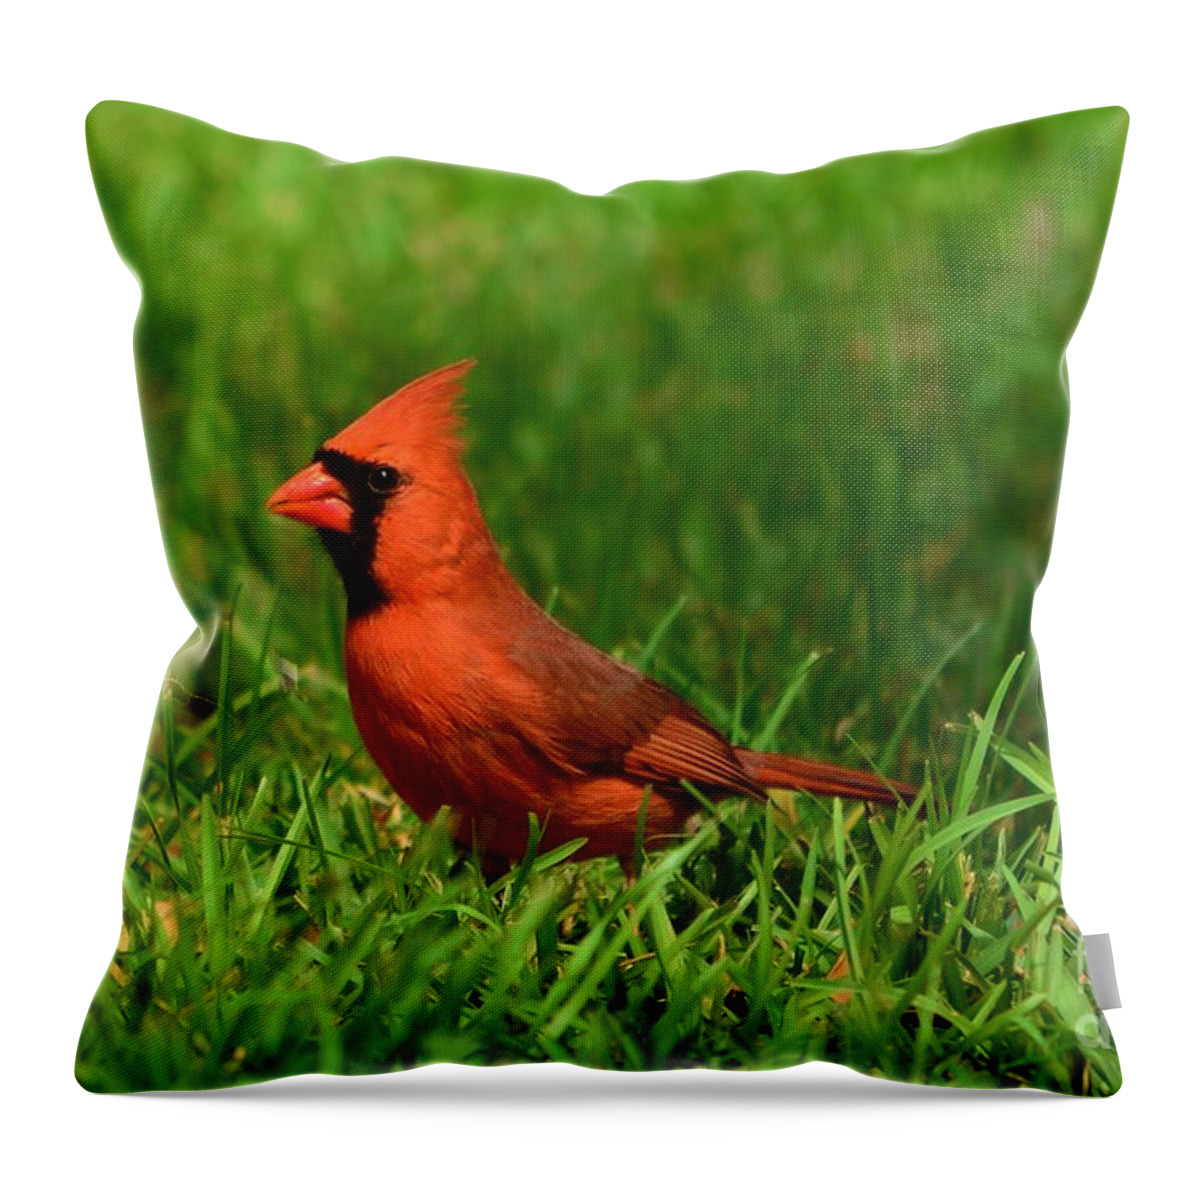 Cardinal Throw Pillow featuring the photograph Male Cardinal by Bob Sample